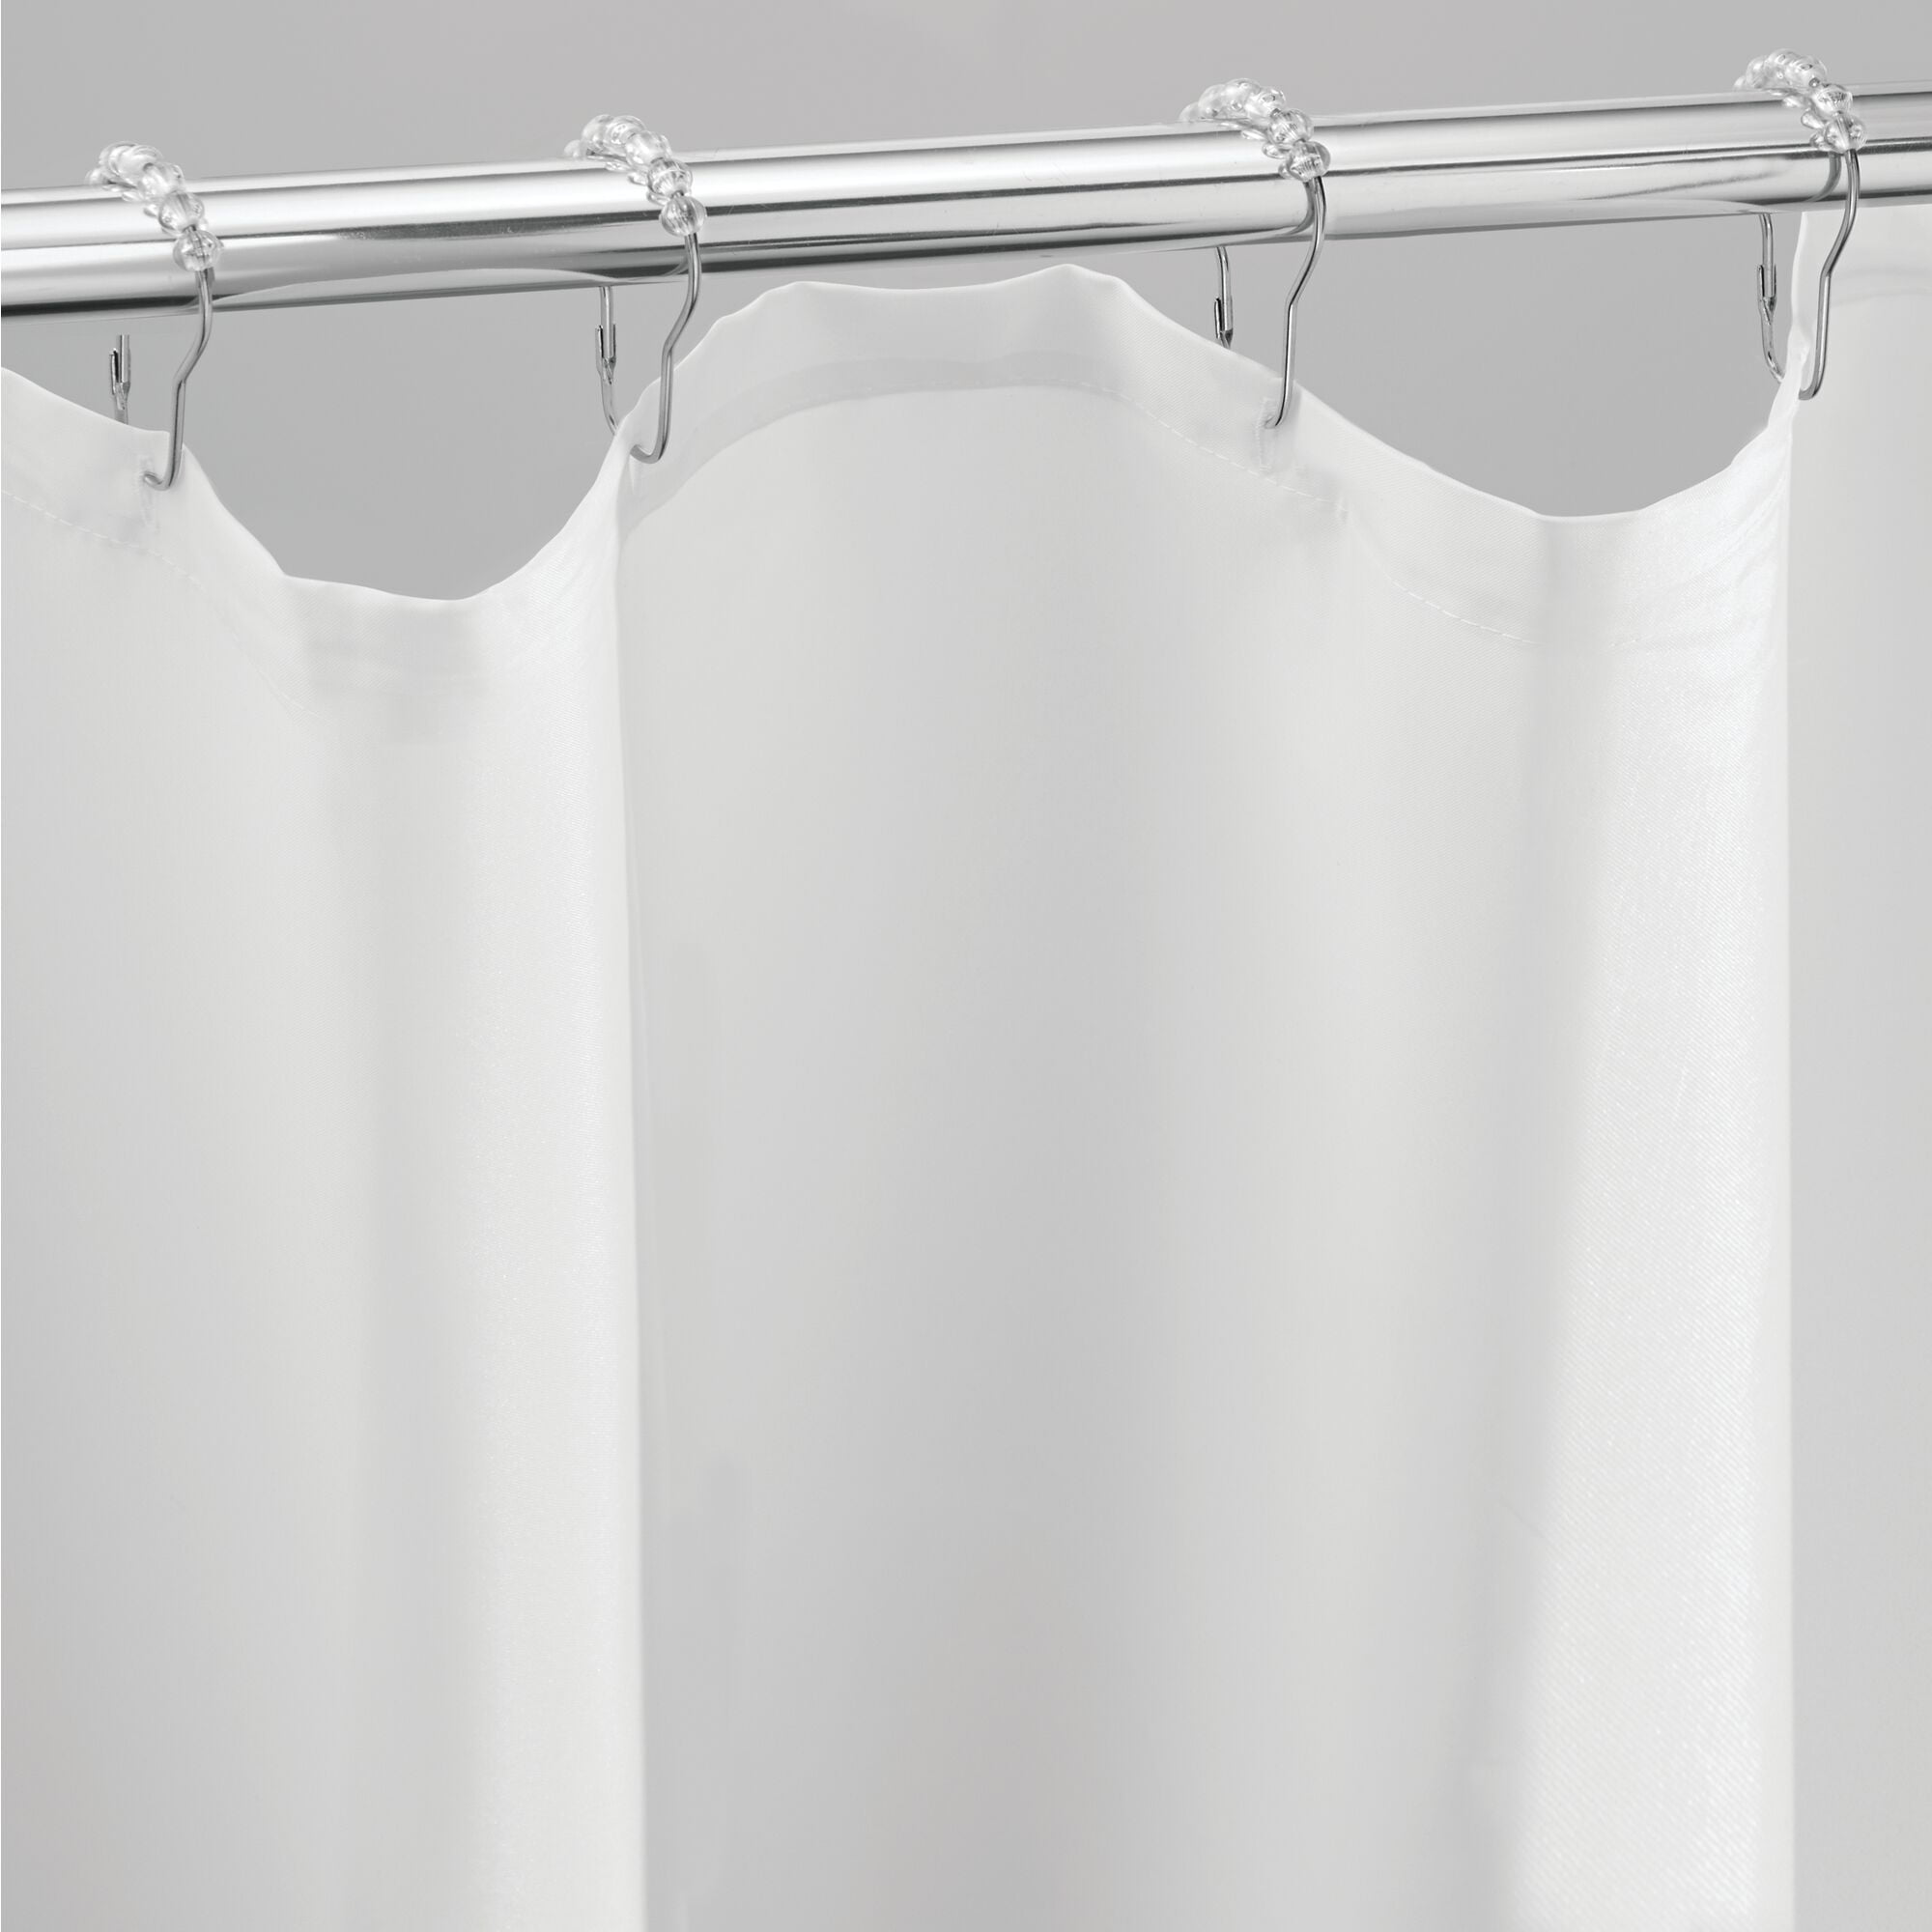 Idesign Peva 3 Gauge Shower Curtain Liner Stall 54 X 78 White Com